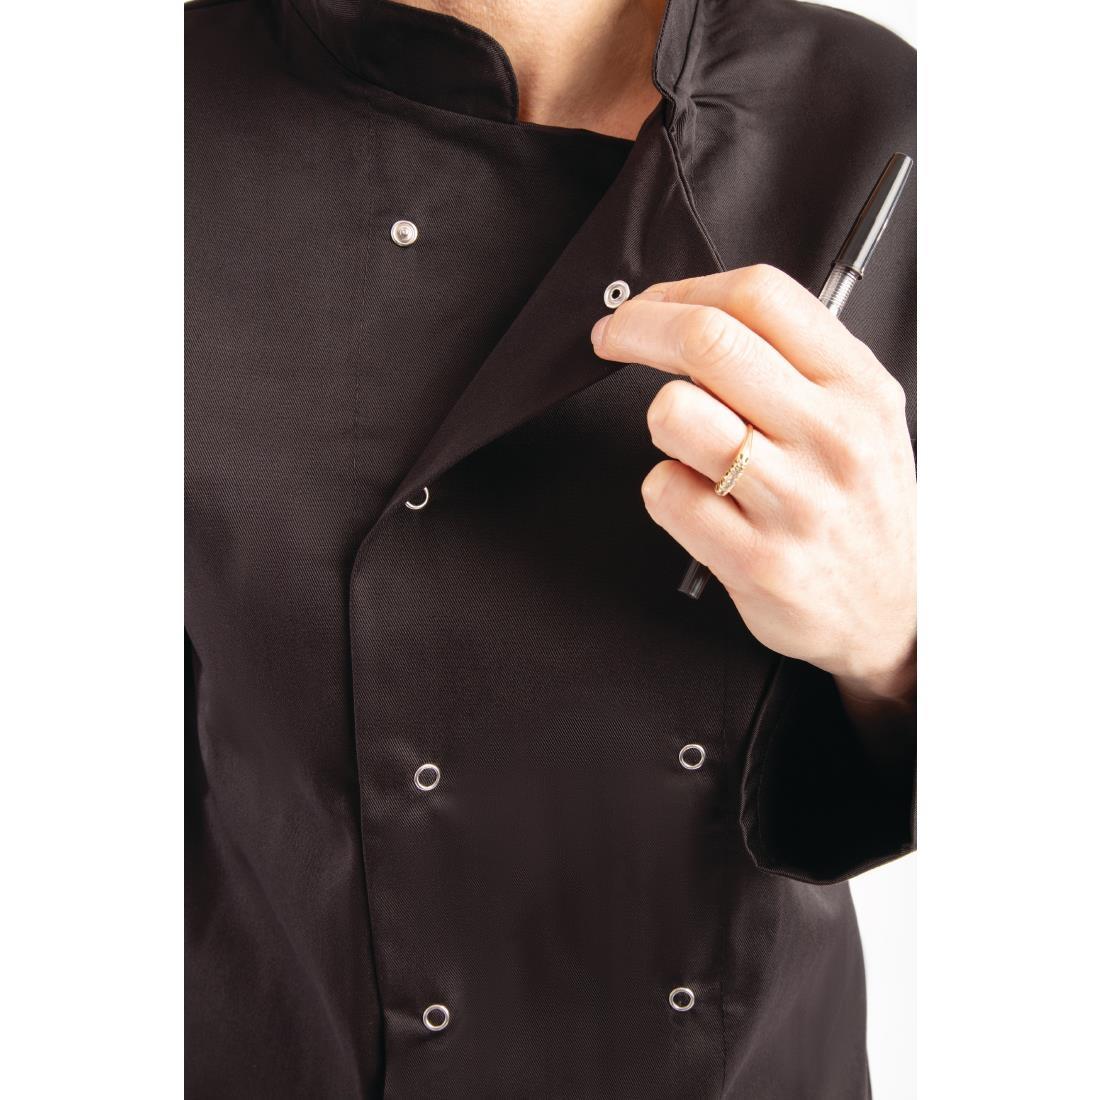 Whites Vegas Unisex Chefs Jacket Long Sleeve Black XL - A438-XL  - 8